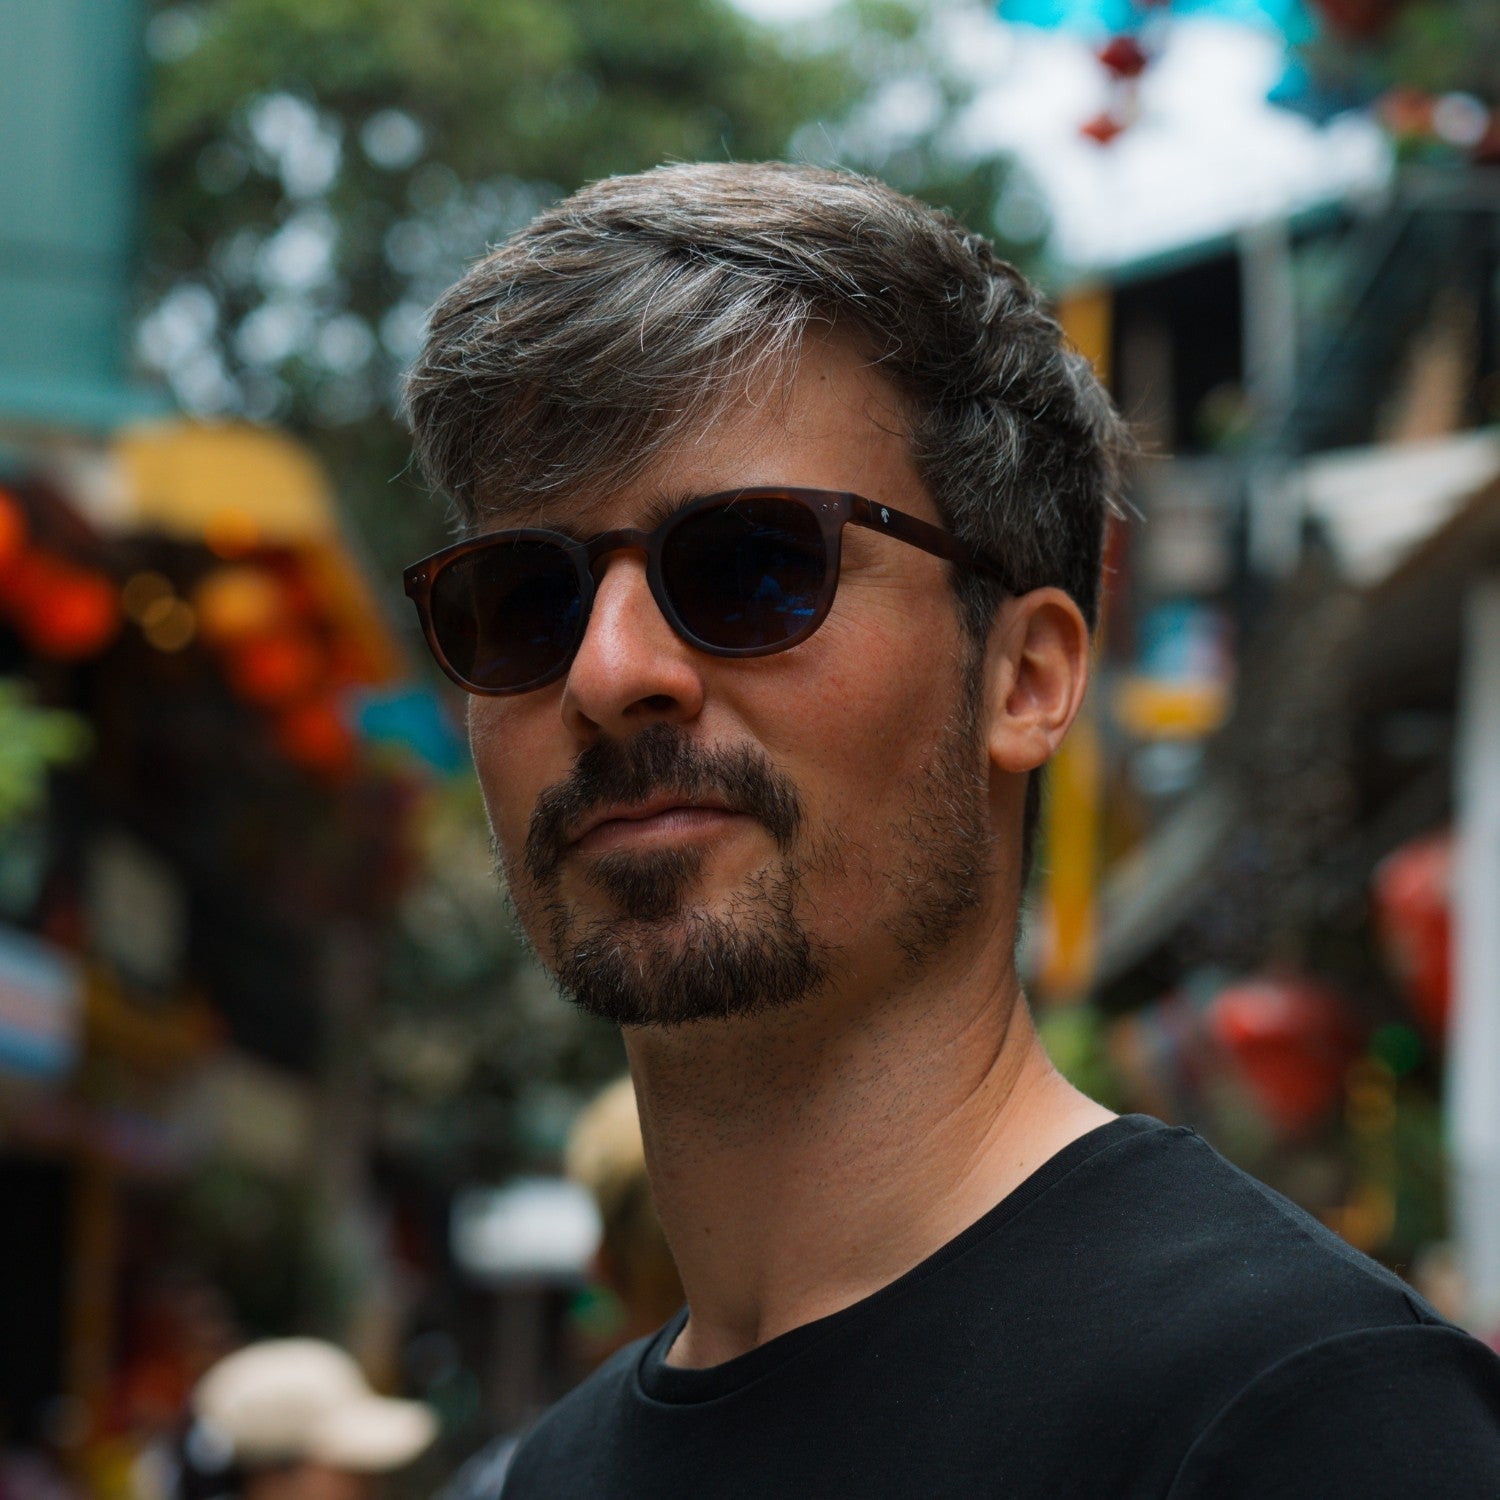 Notre cofondateur Paul porte les lunettes de soleil stockholm dans une rue colorée de Hanoi au Vietnam